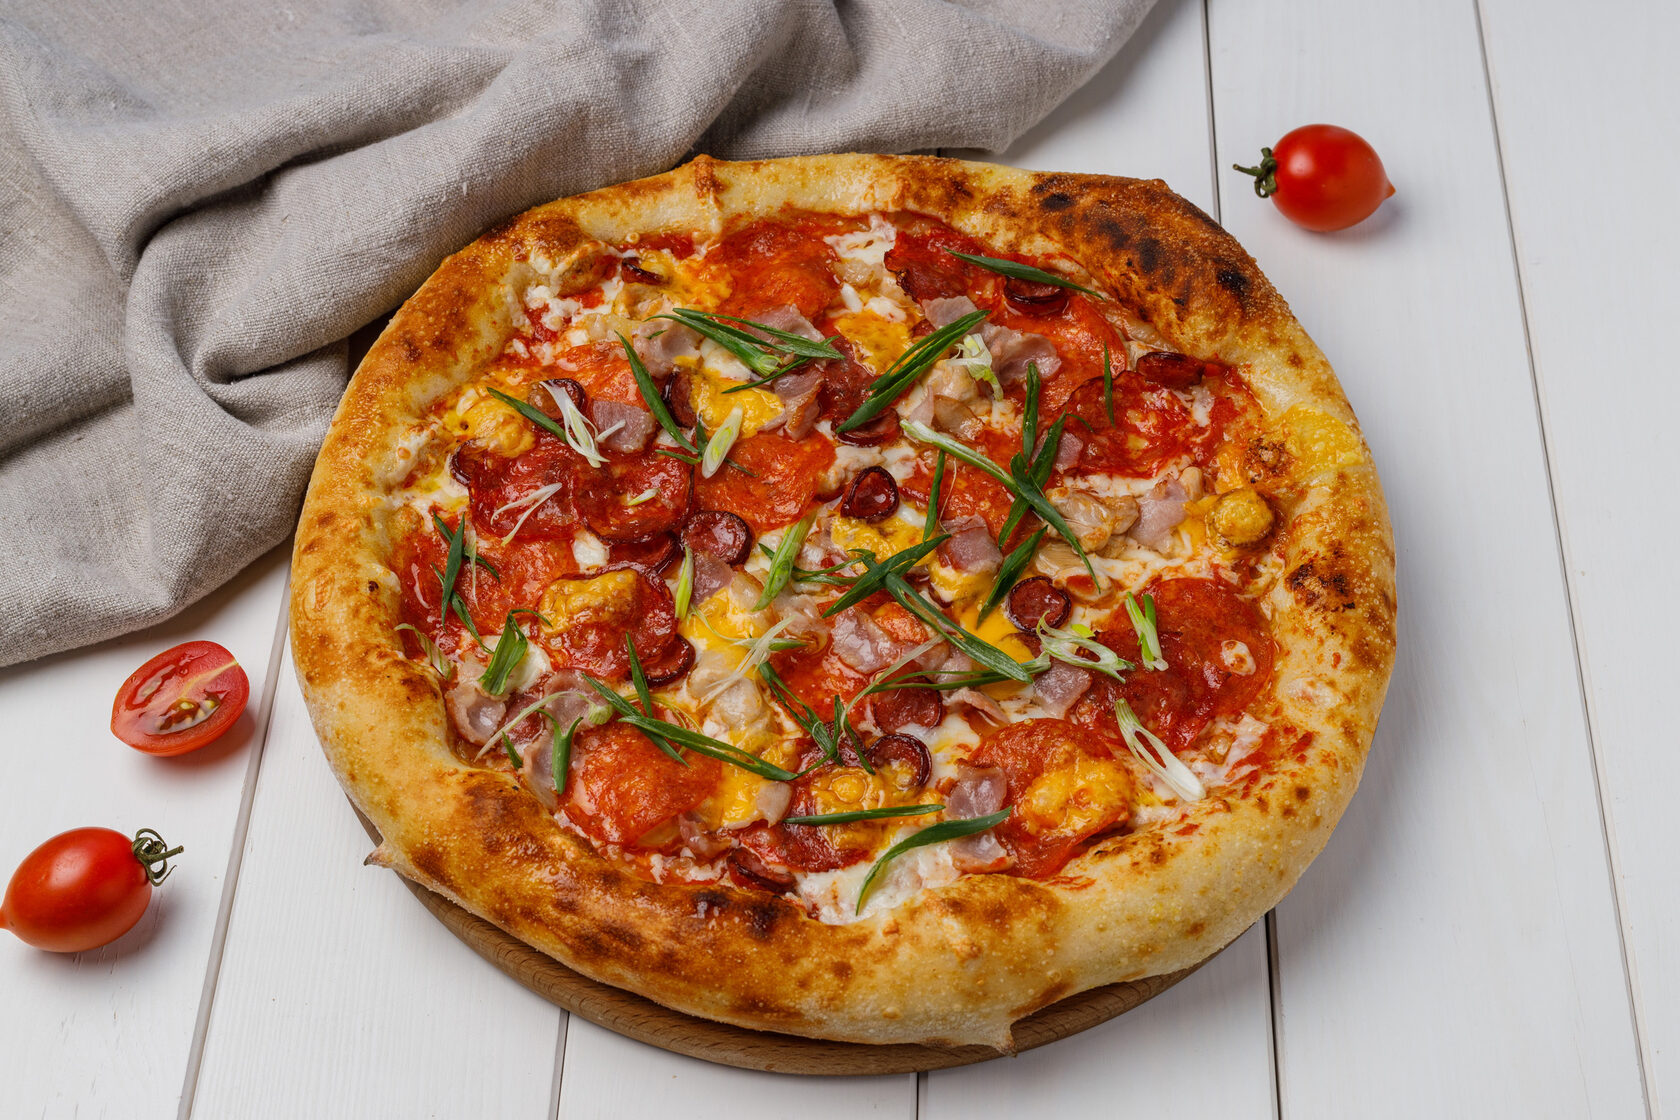 Супер пицца доставка. Супер пицца. Пицца мясная. Римская пицца чоризо хавчик тут. Мясная история колбаса пепперони.